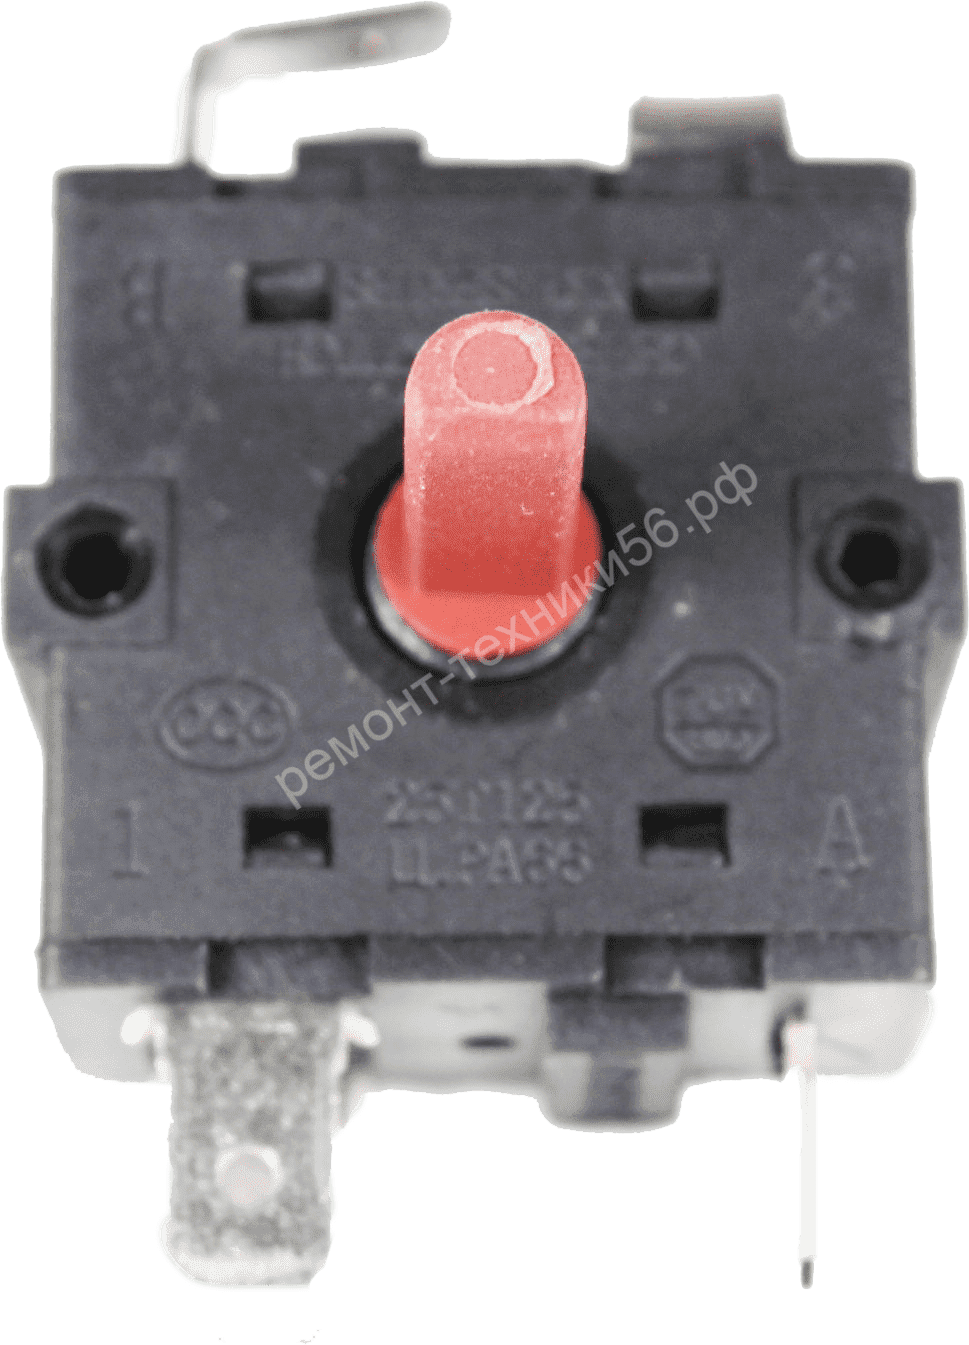 Переключатель Rotary Switch XK1-233,2-1 - широкий выбор фото3